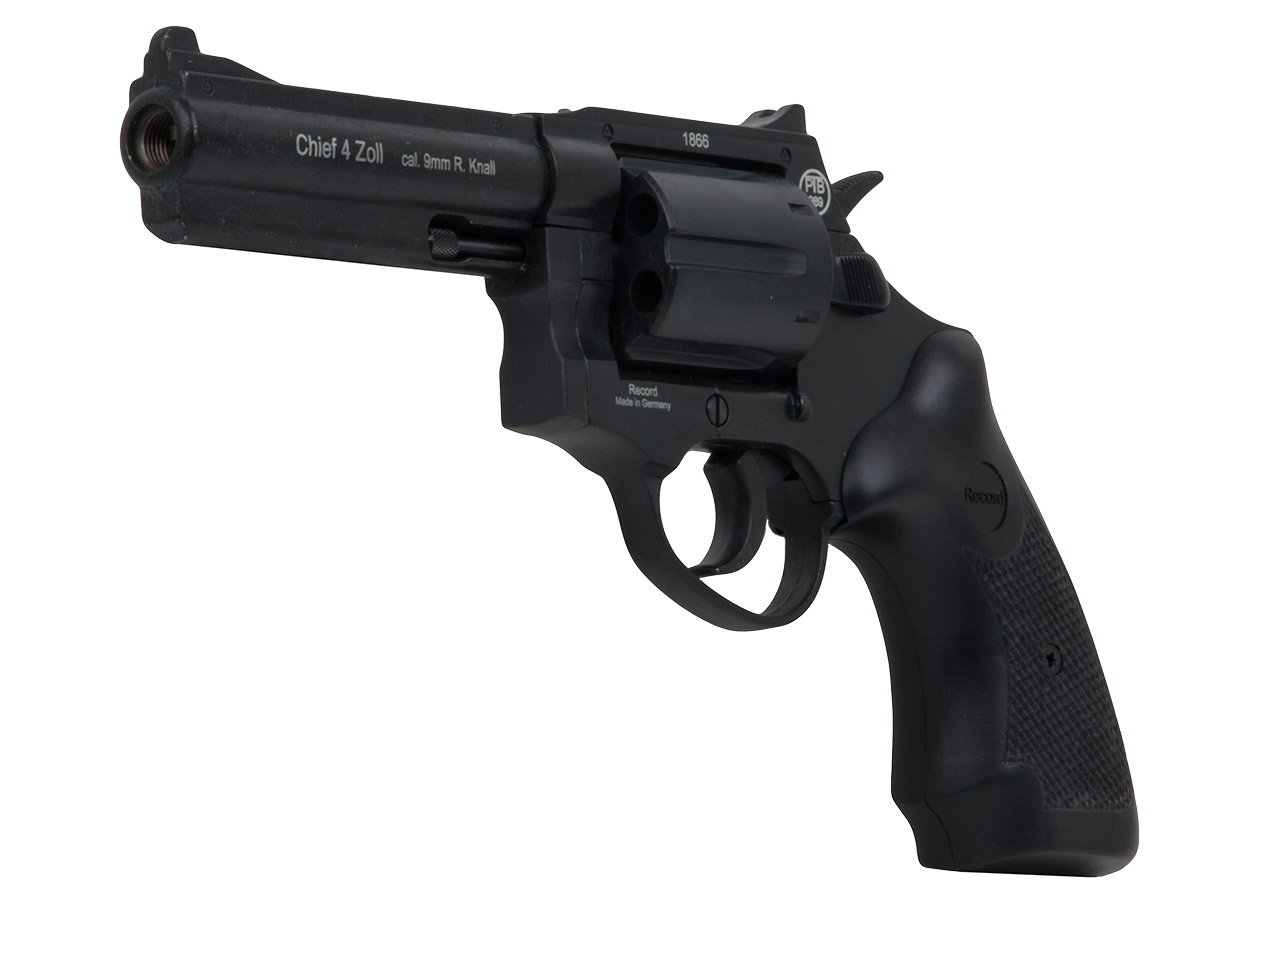 Schreckschuss Revolver Record Chief 4 Zoll PTB 989 brüniert Kaliber 9 mm R.K. (P18) <b>+ 50 Schuss</b>